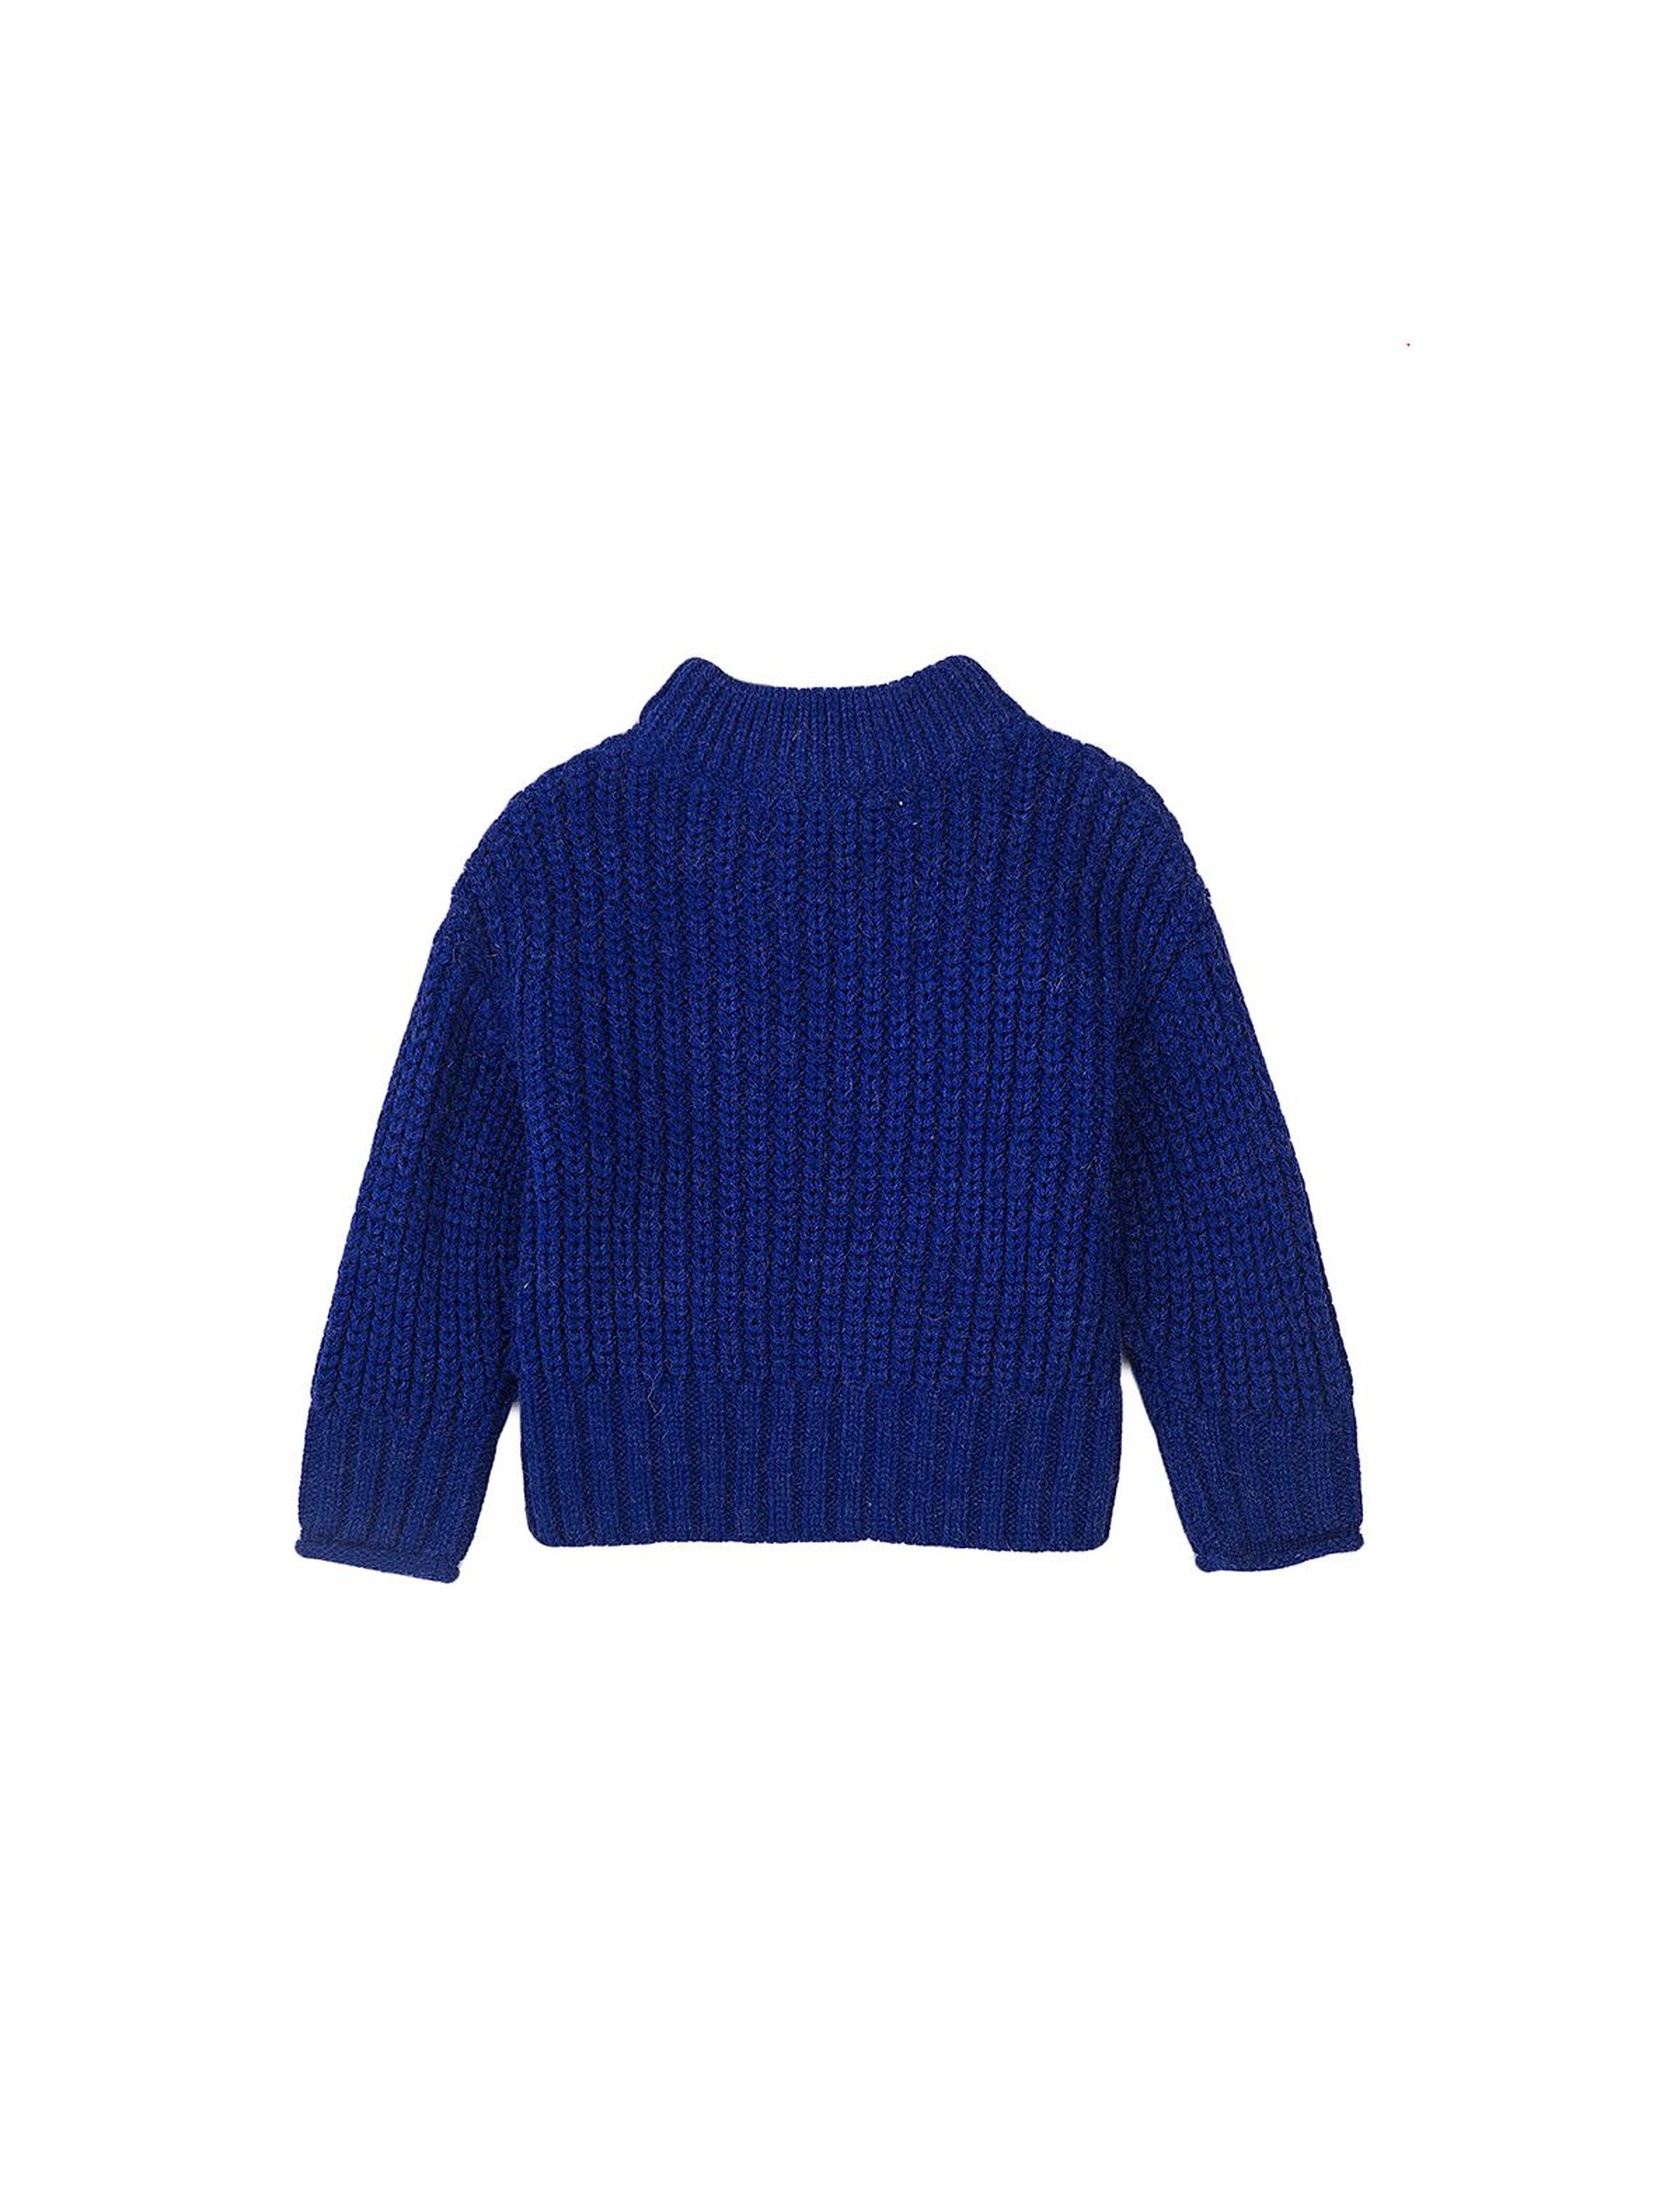 Sweter dziewczęcy dzianinowy niebieski